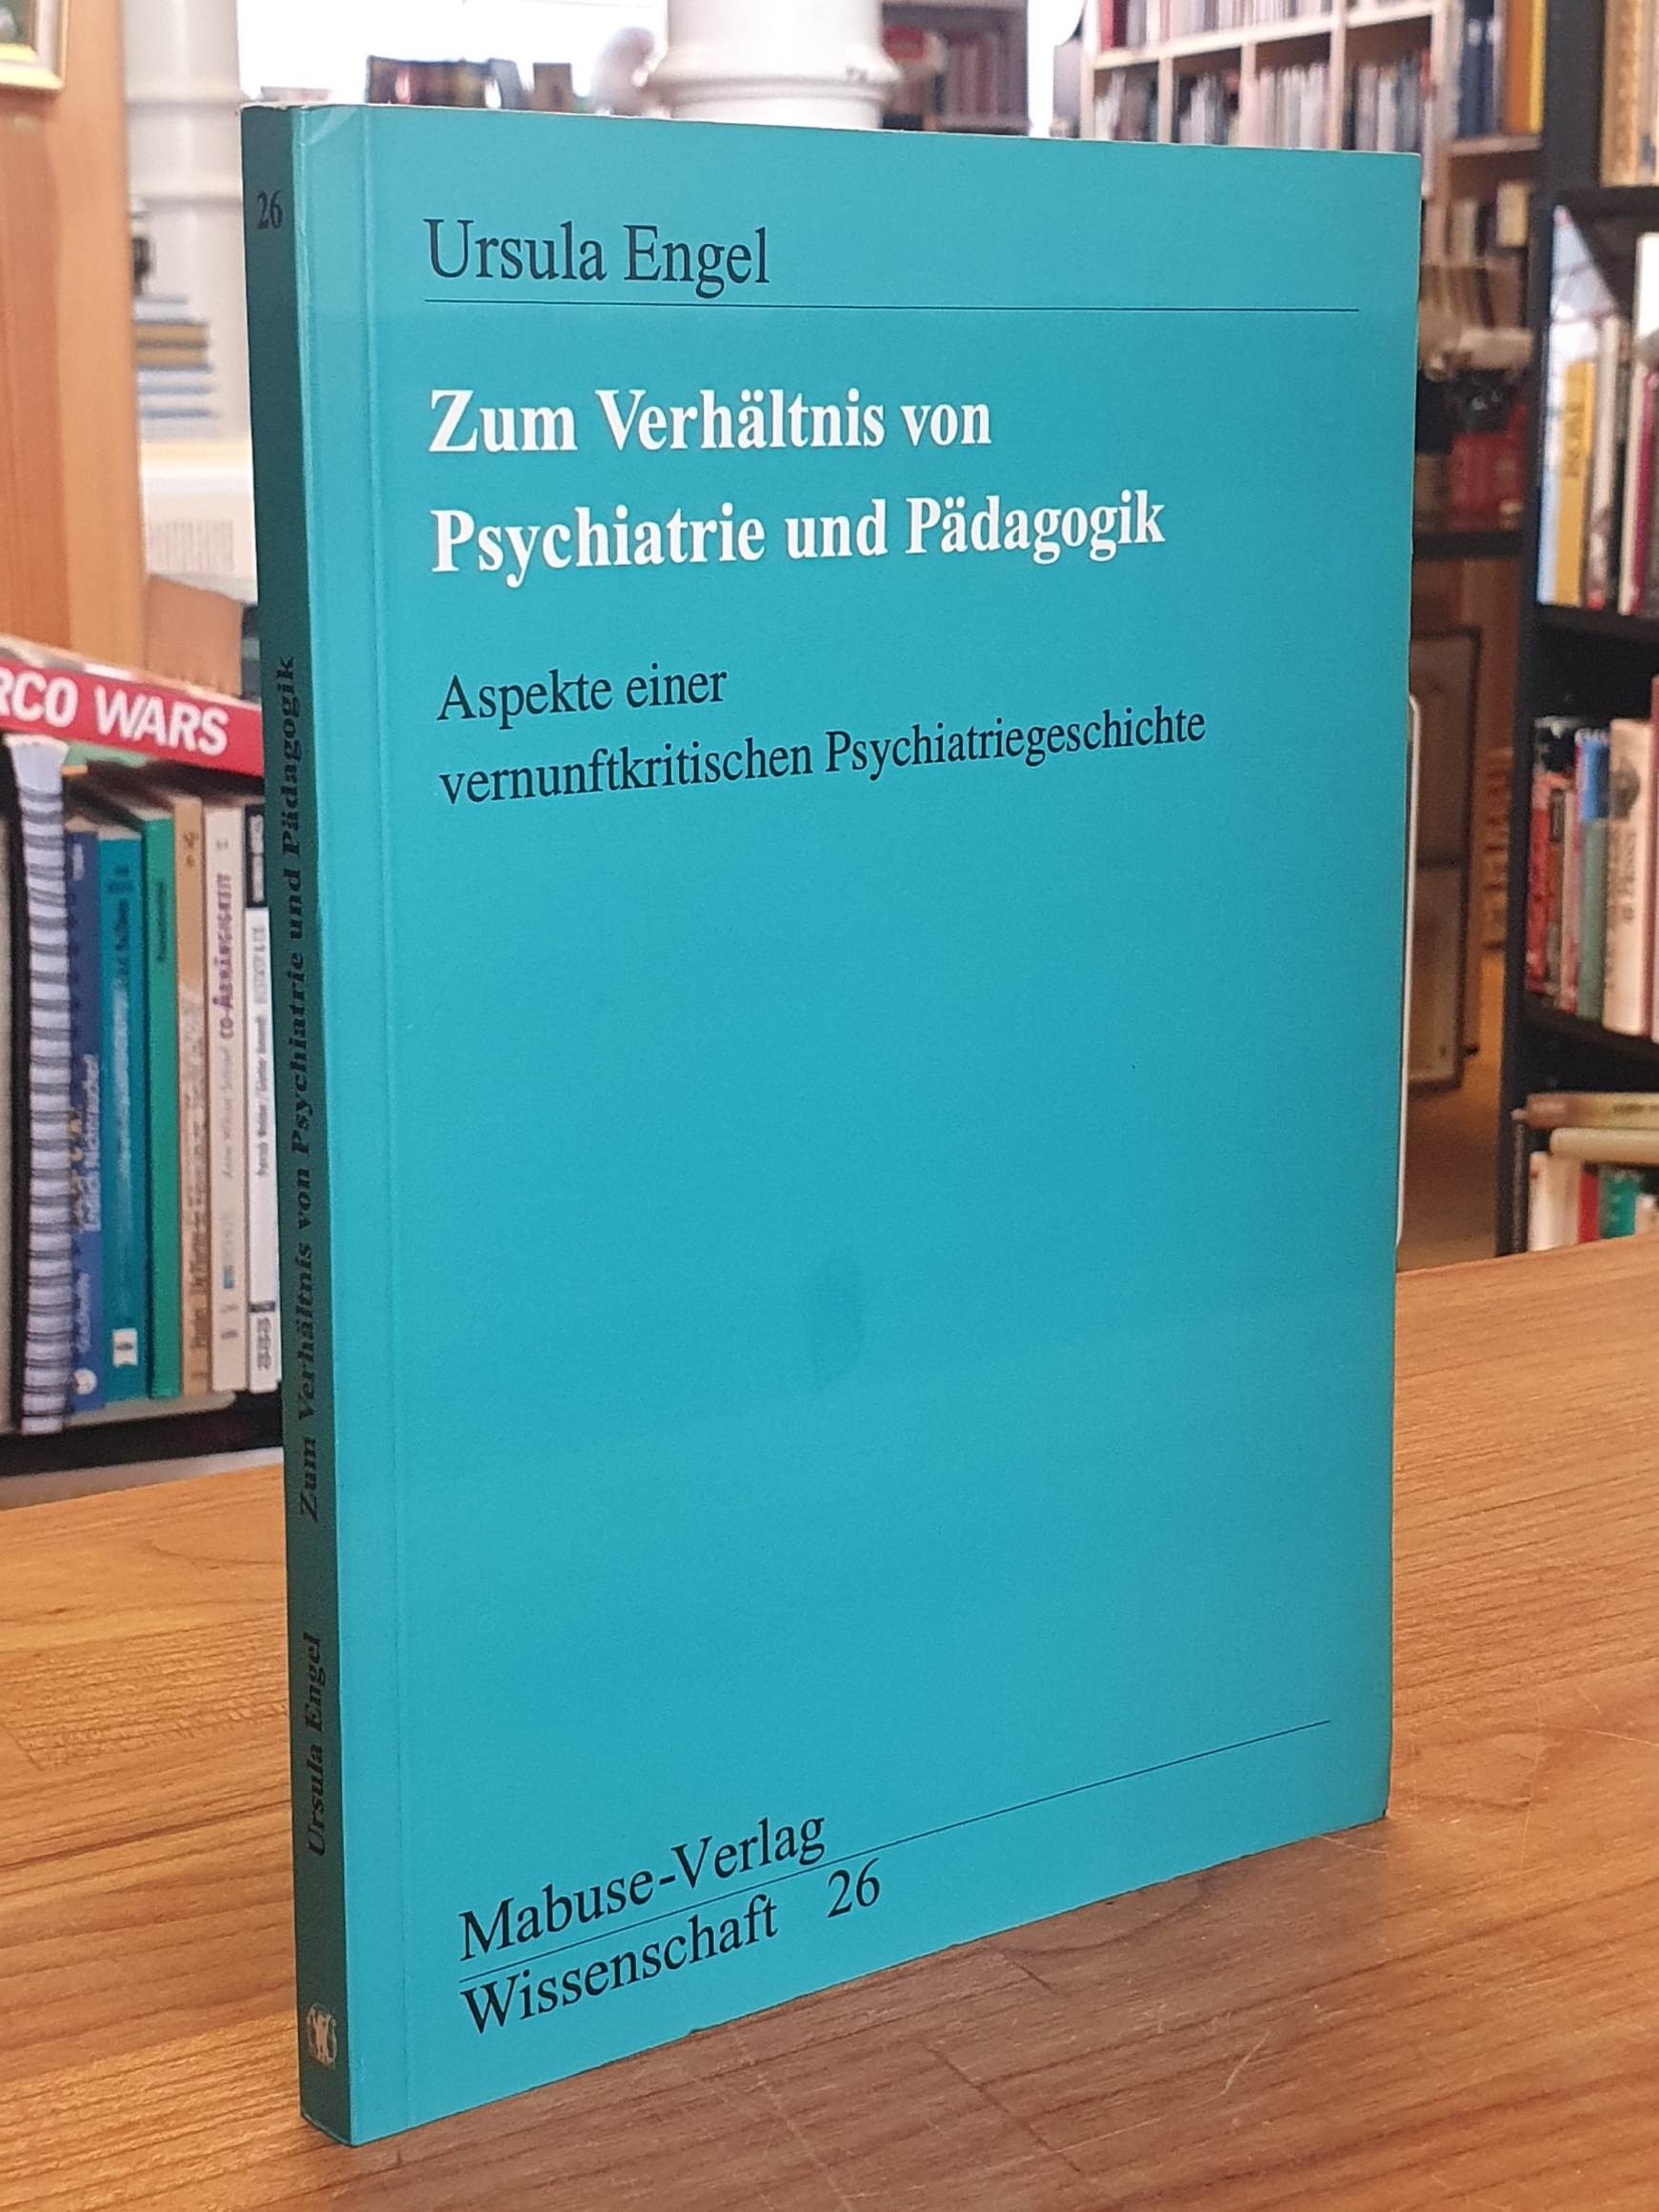 Zum Verhältnis von Psychiatrie und Pädagogik - Aspekte einer vernunftkritischen Psychiatriegeschichte, - Engel, Ursula,